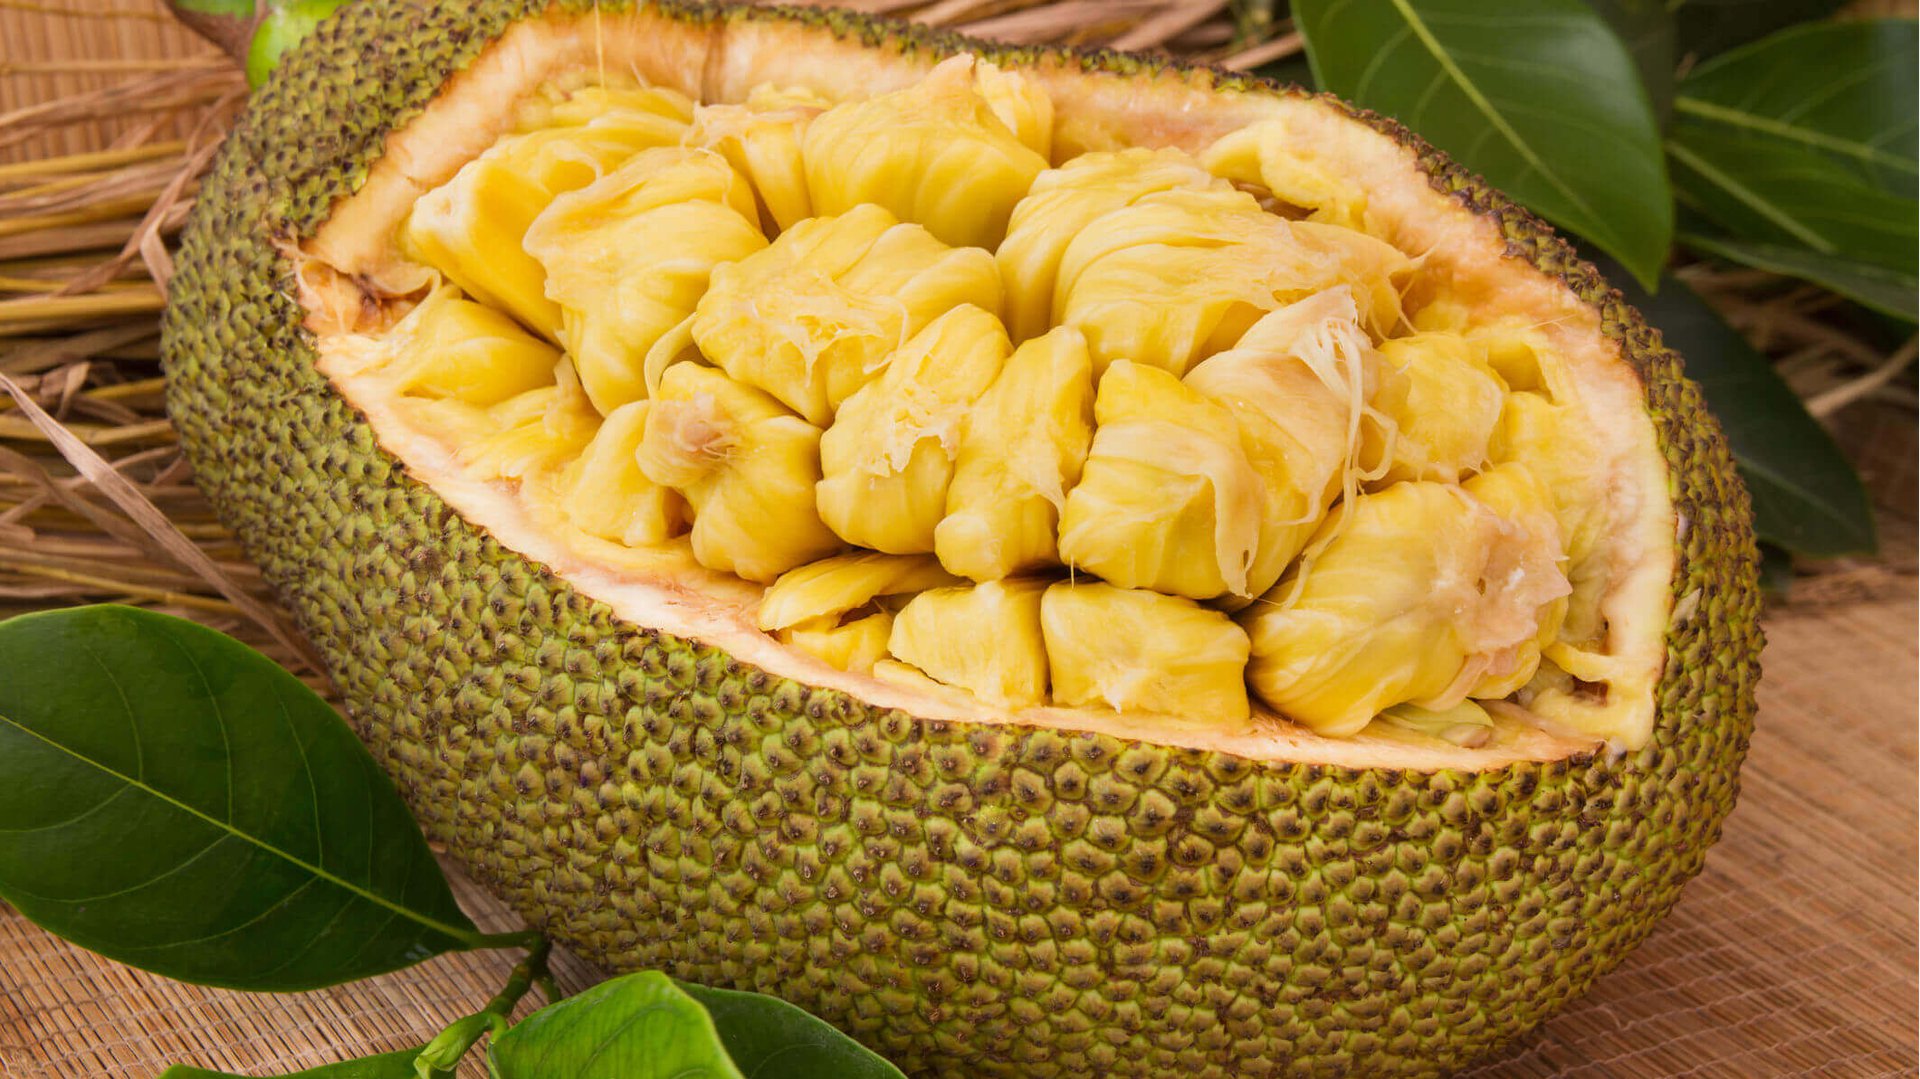 Джекфрут — фото, вкус, что это за фрукт, отличие от дуриана, польза, свойства